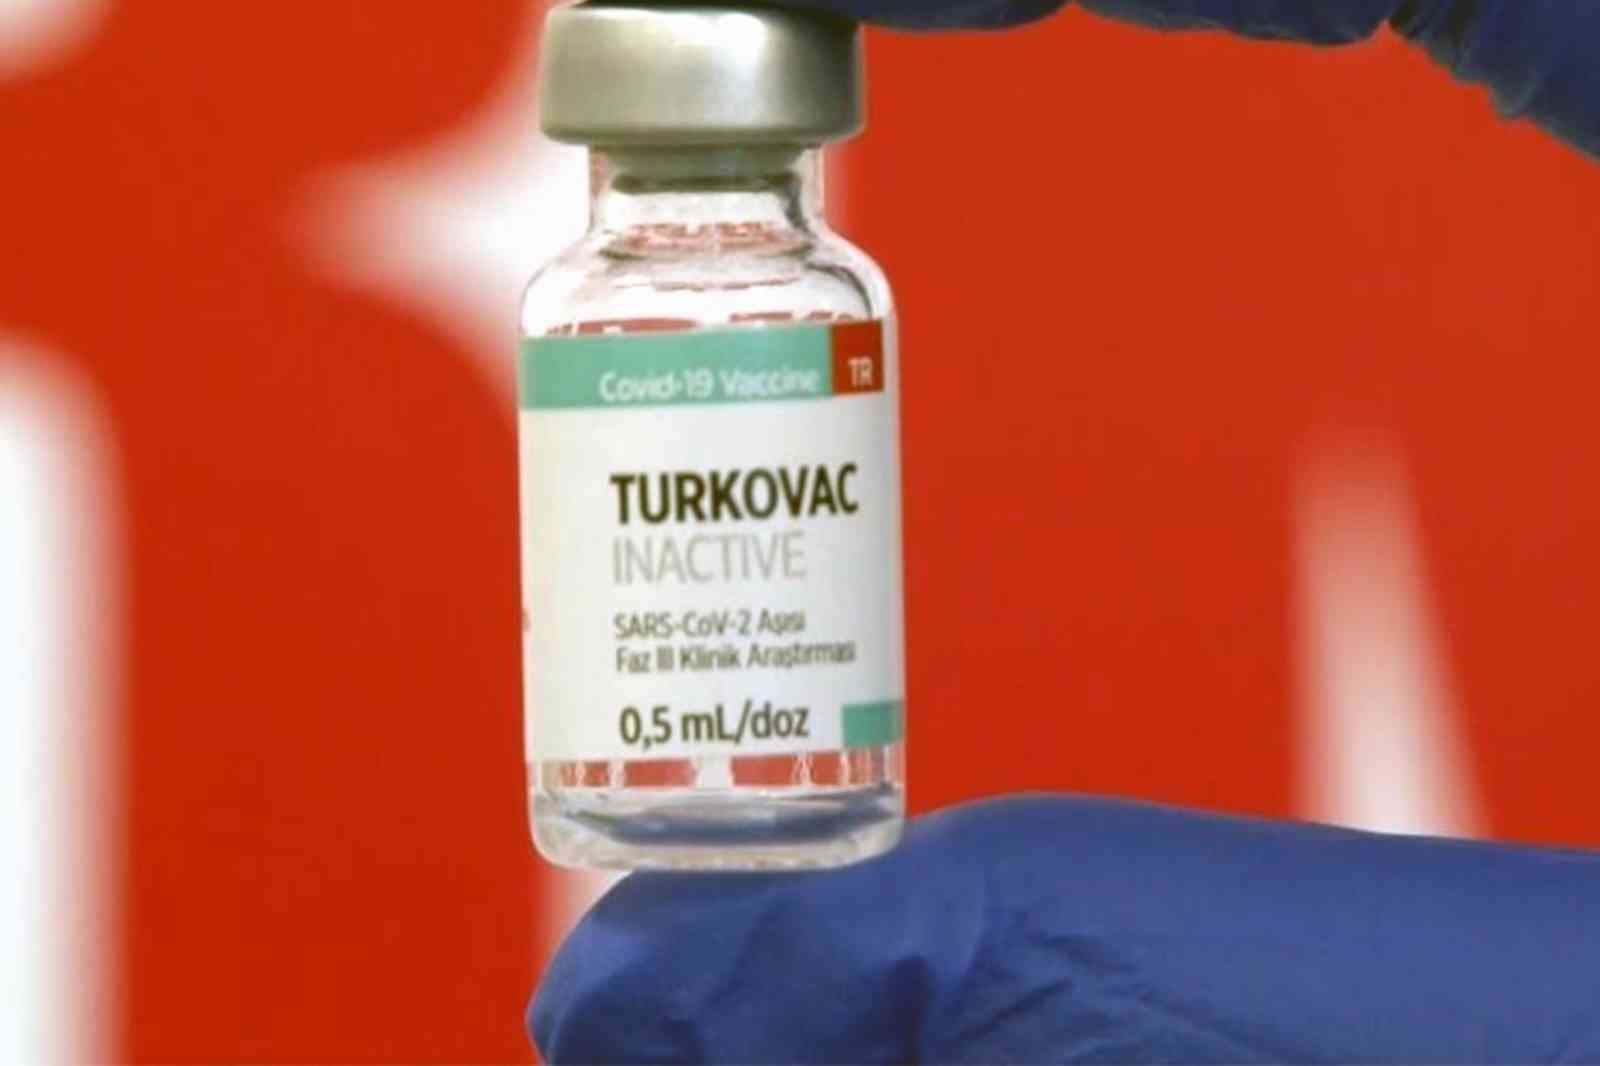 Muğla’da yerli aşı TURKOVAC uygulaması başlıyor #mugla